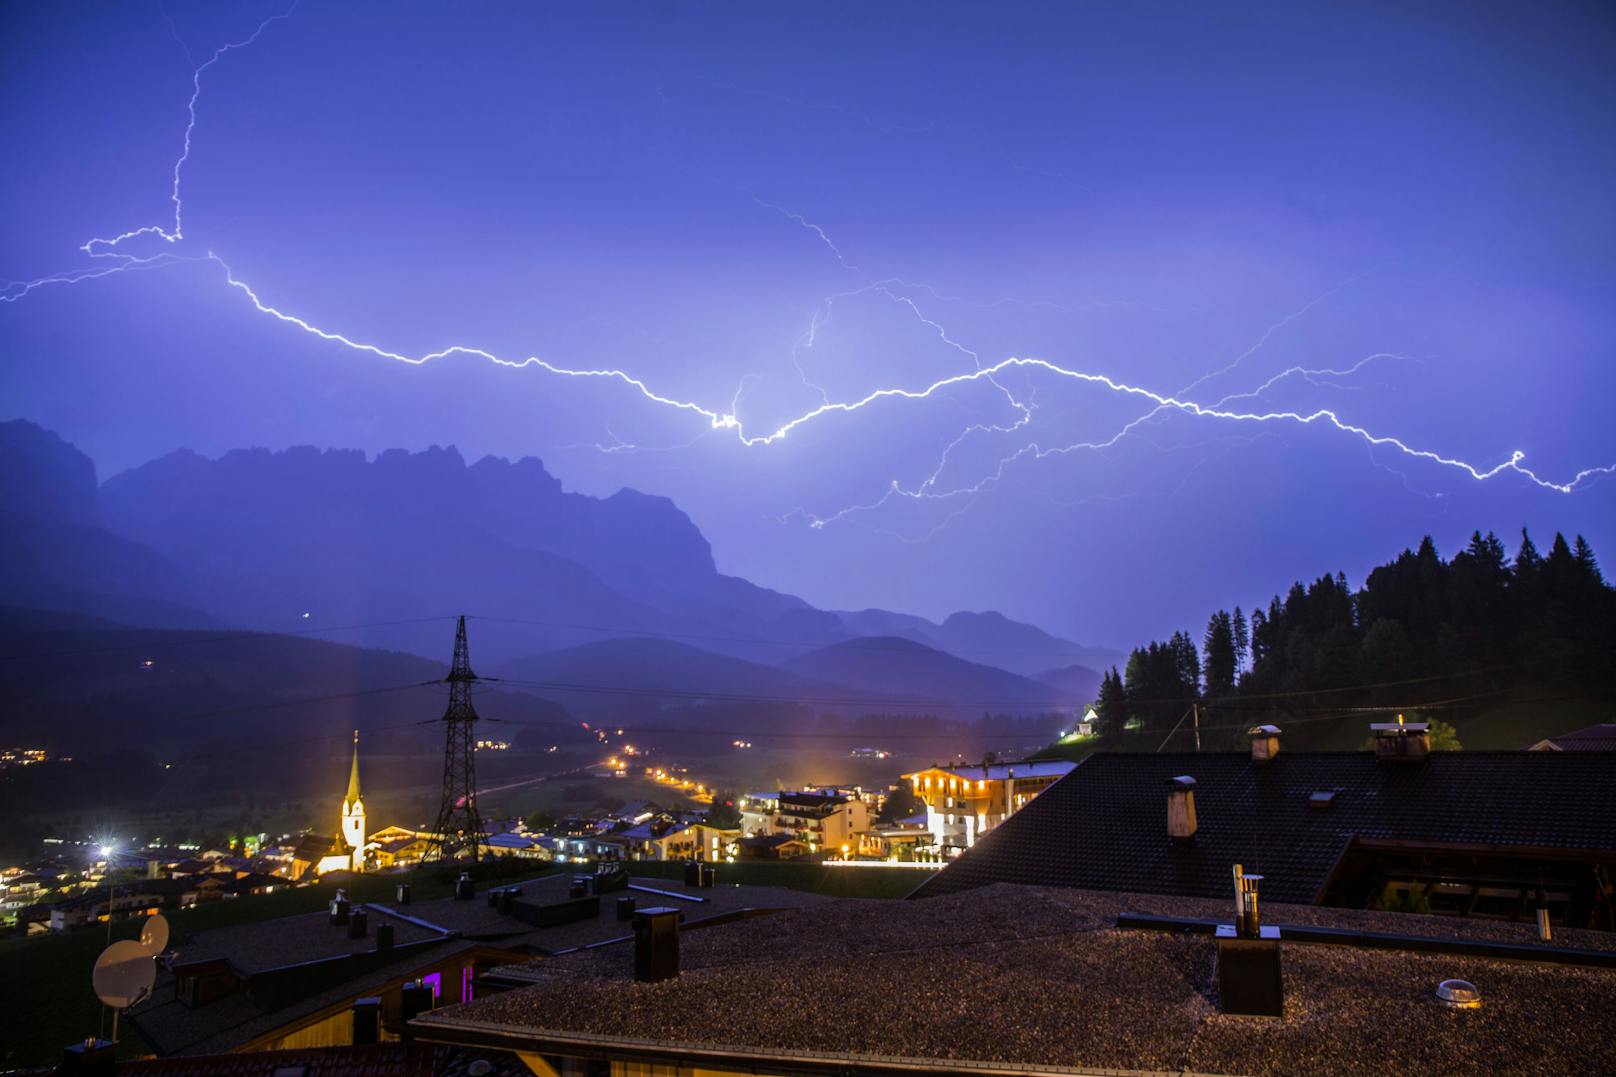 Blitze über dem abendlichen Himmel von Ellmau in Tirol. Archivbild